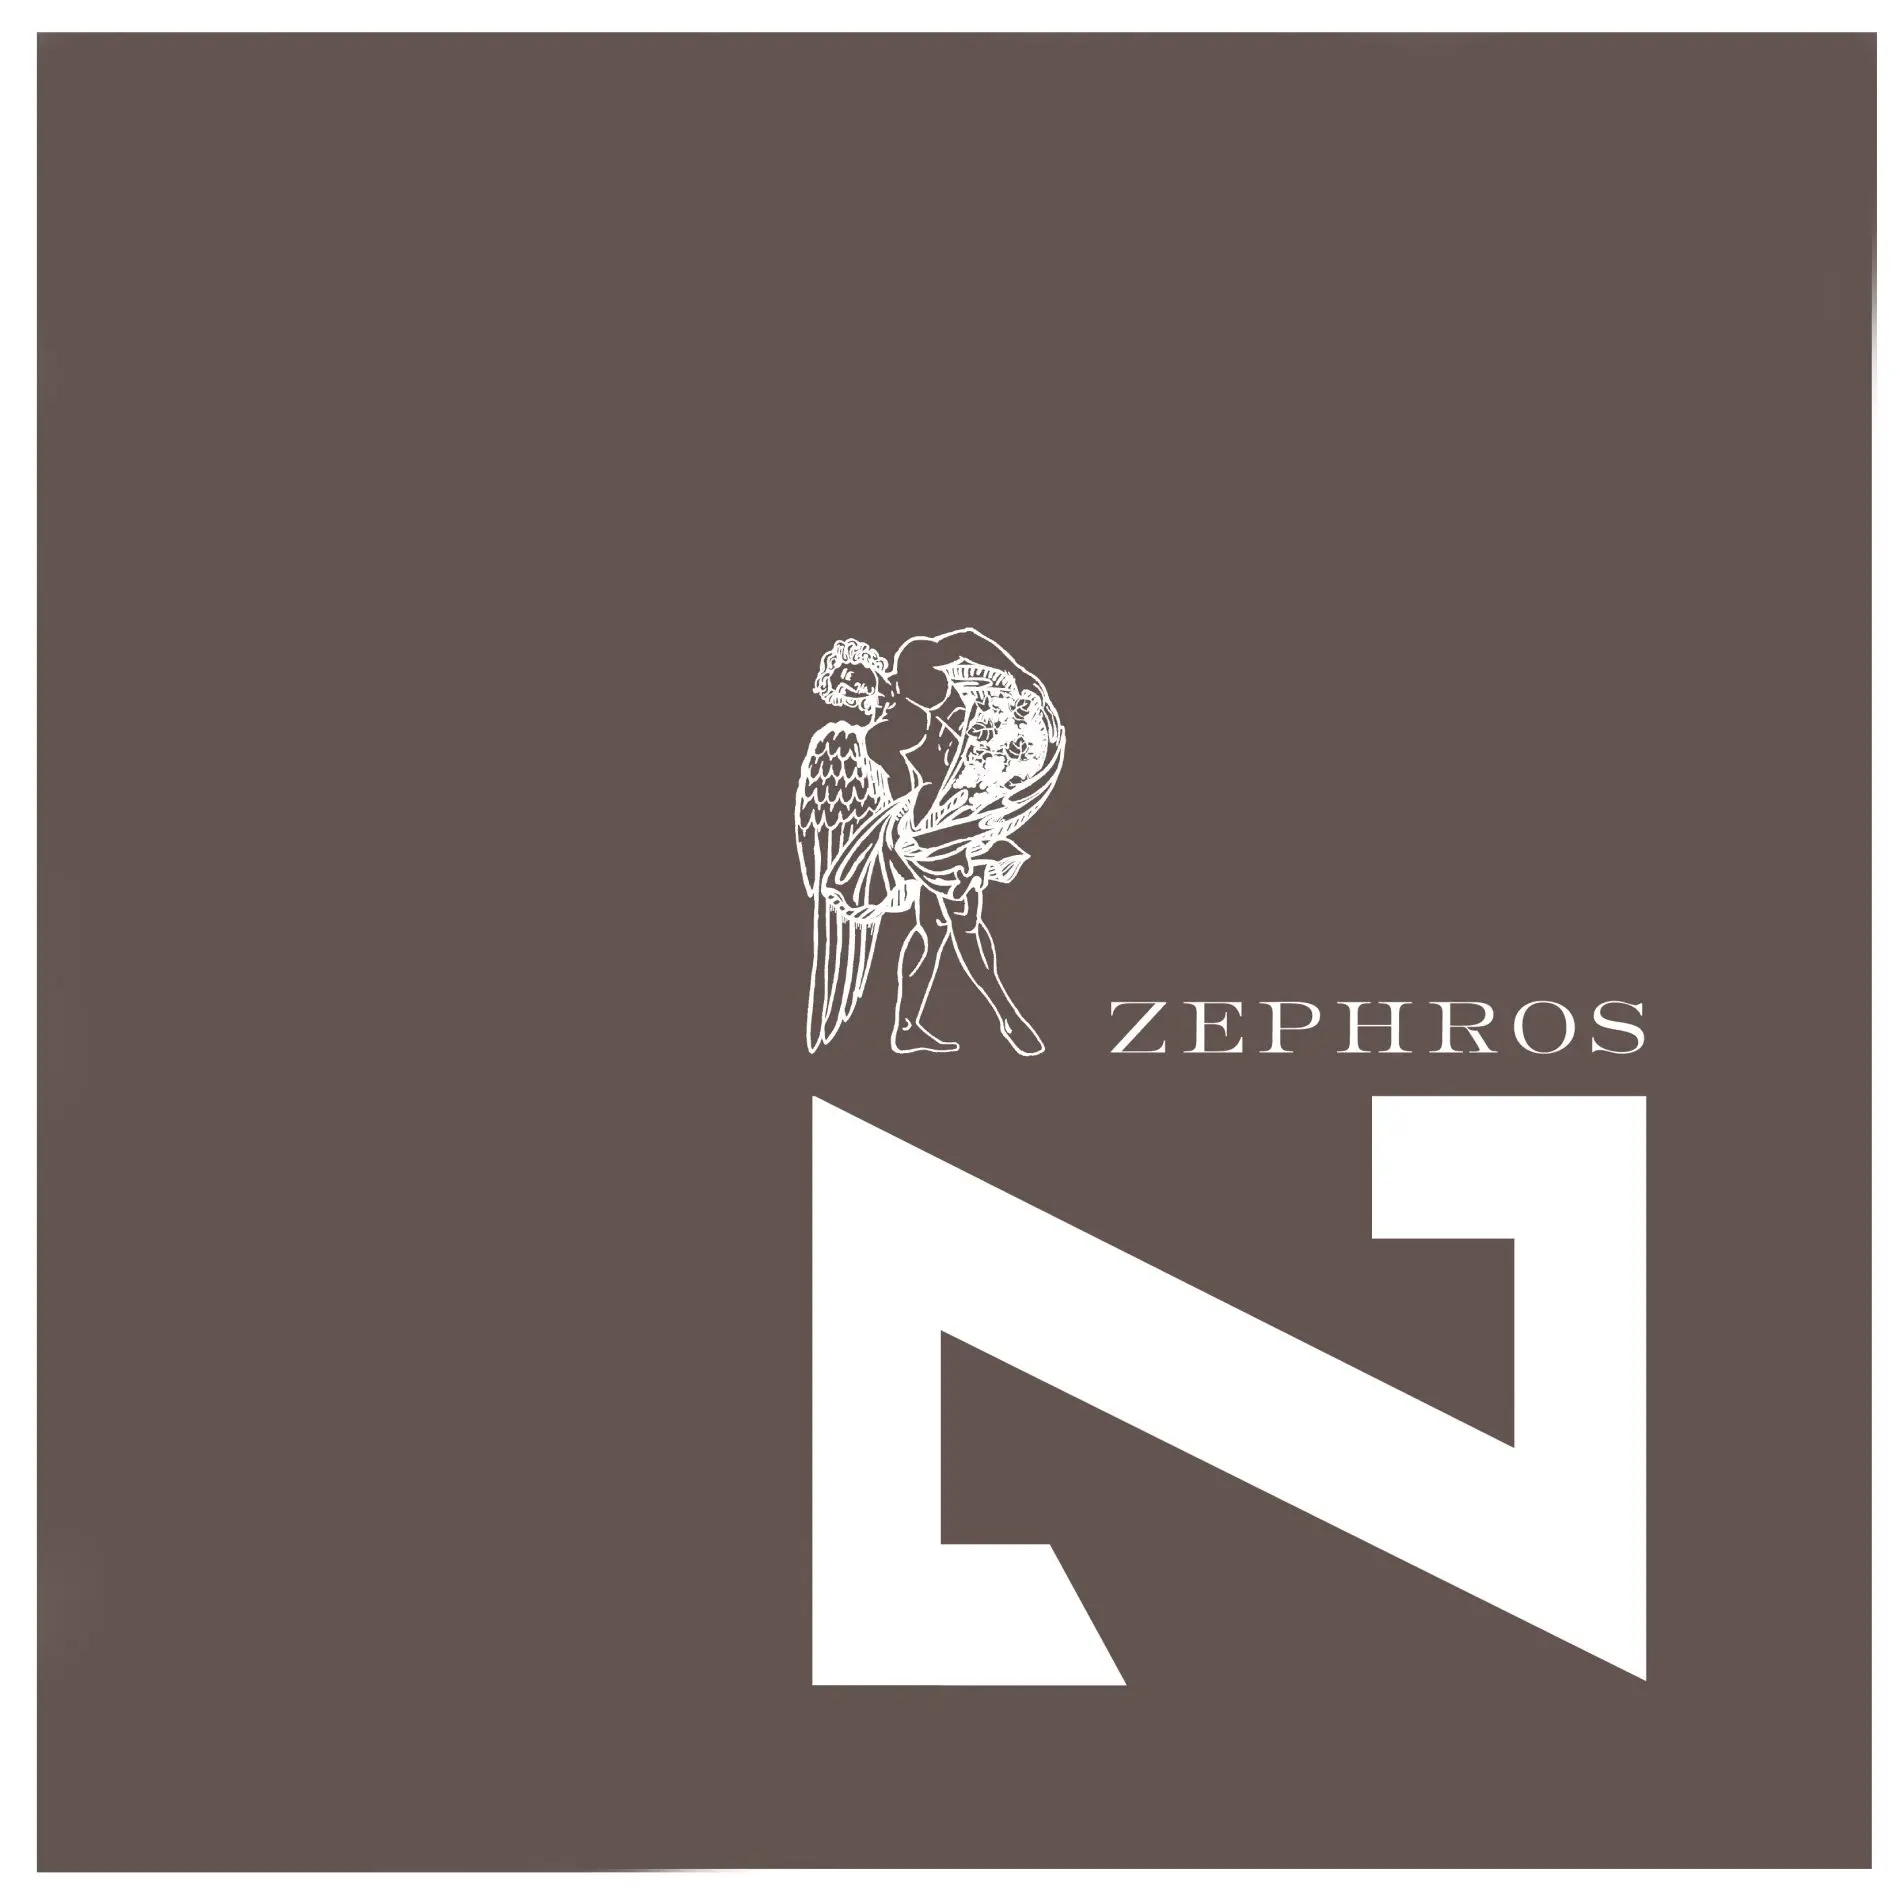 ZEPHROS WINES